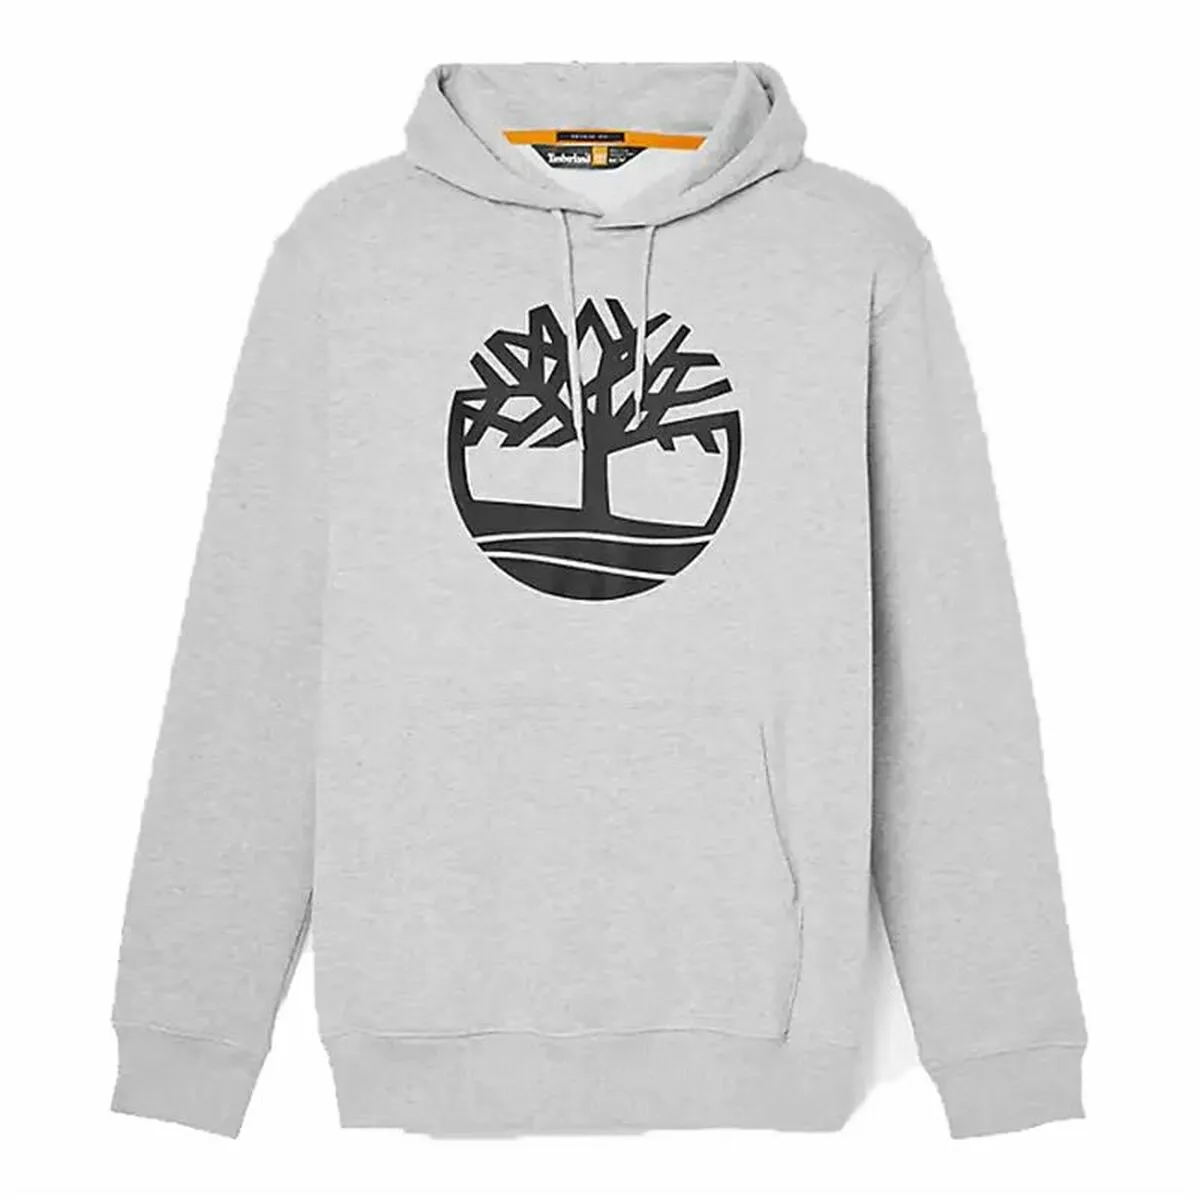 Herren Sweater mit Kapuze Timberland Kenn Tree Logo Hellgrau - XL